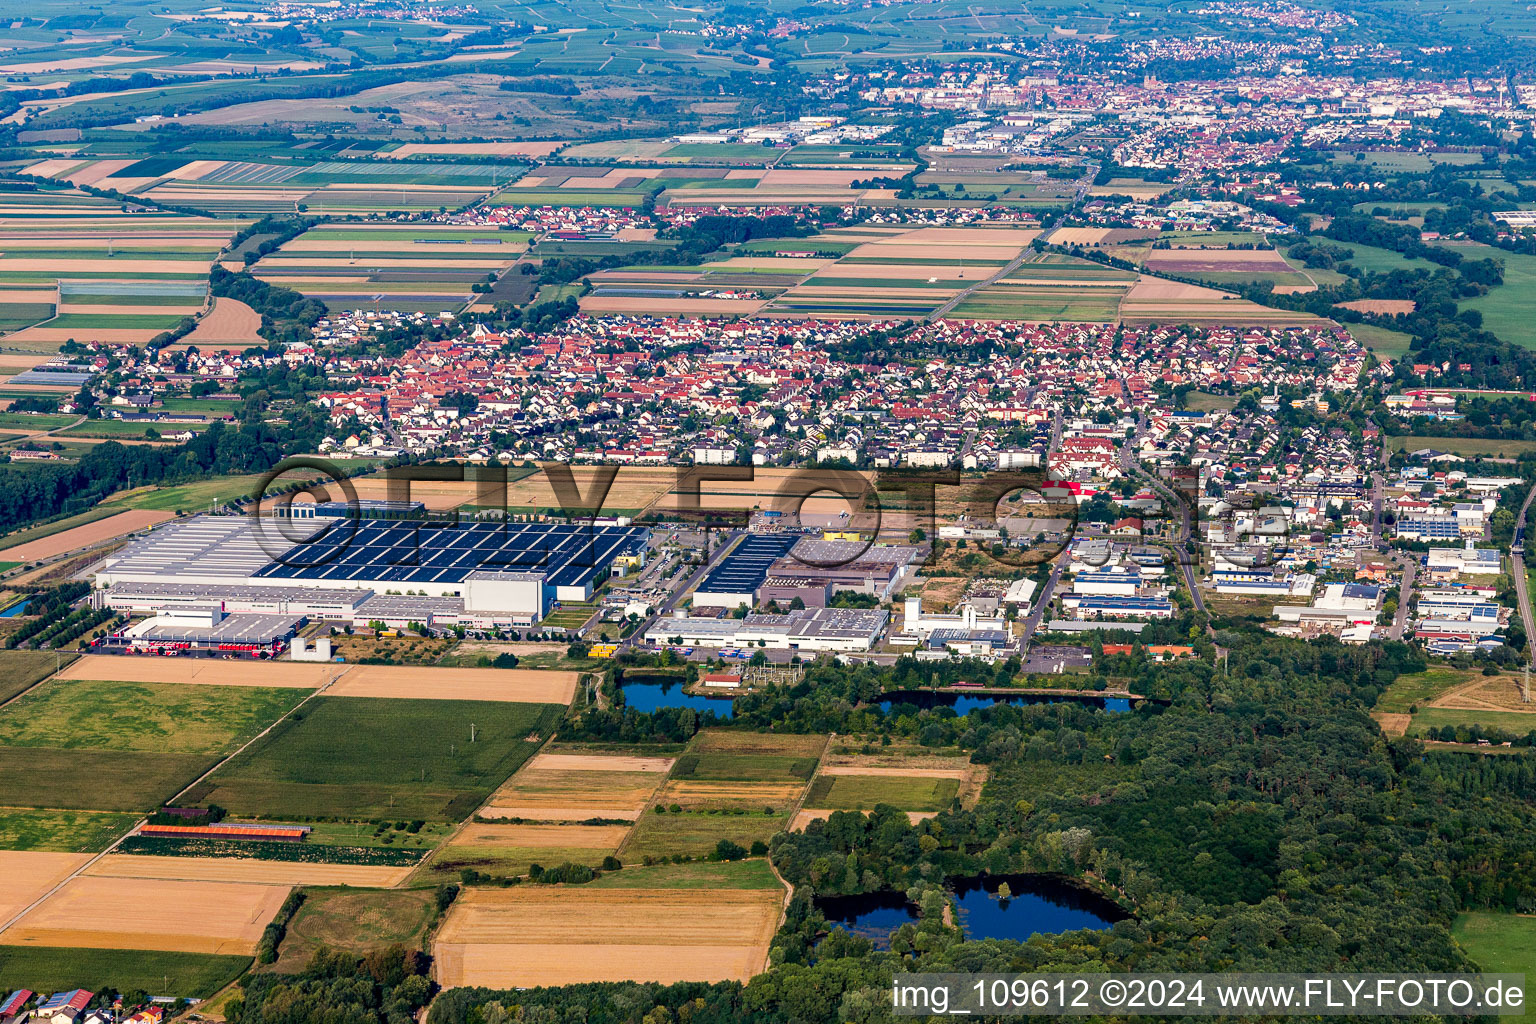 Vue aérienne de Zone urbaine avec périphérie et centre-ville à Offenbach an der Queich dans le département Rhénanie-Palatinat, Allemagne